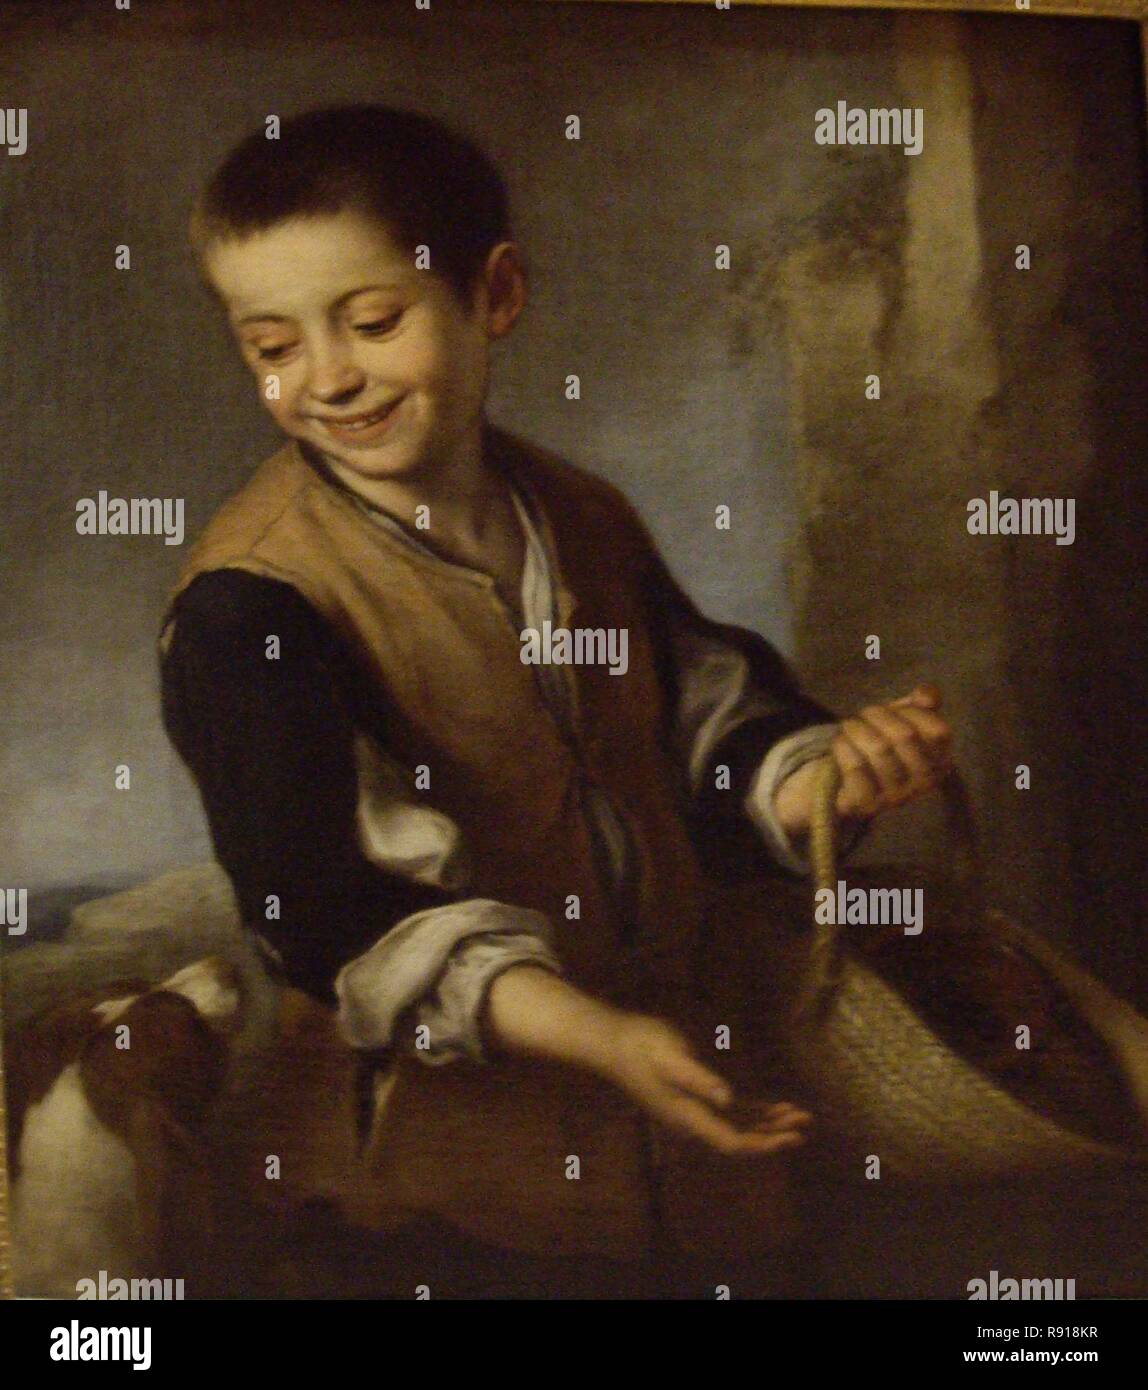 'Junge mit Hund', 1655-1656, Öl auf Leinwand, 60 x 74 cm. Autor: MURILLO, Bartolome Esteban. Lage: MUSEO ERMITAGE - coleccion. ST. PETERSBURG. Russland. Stockfoto